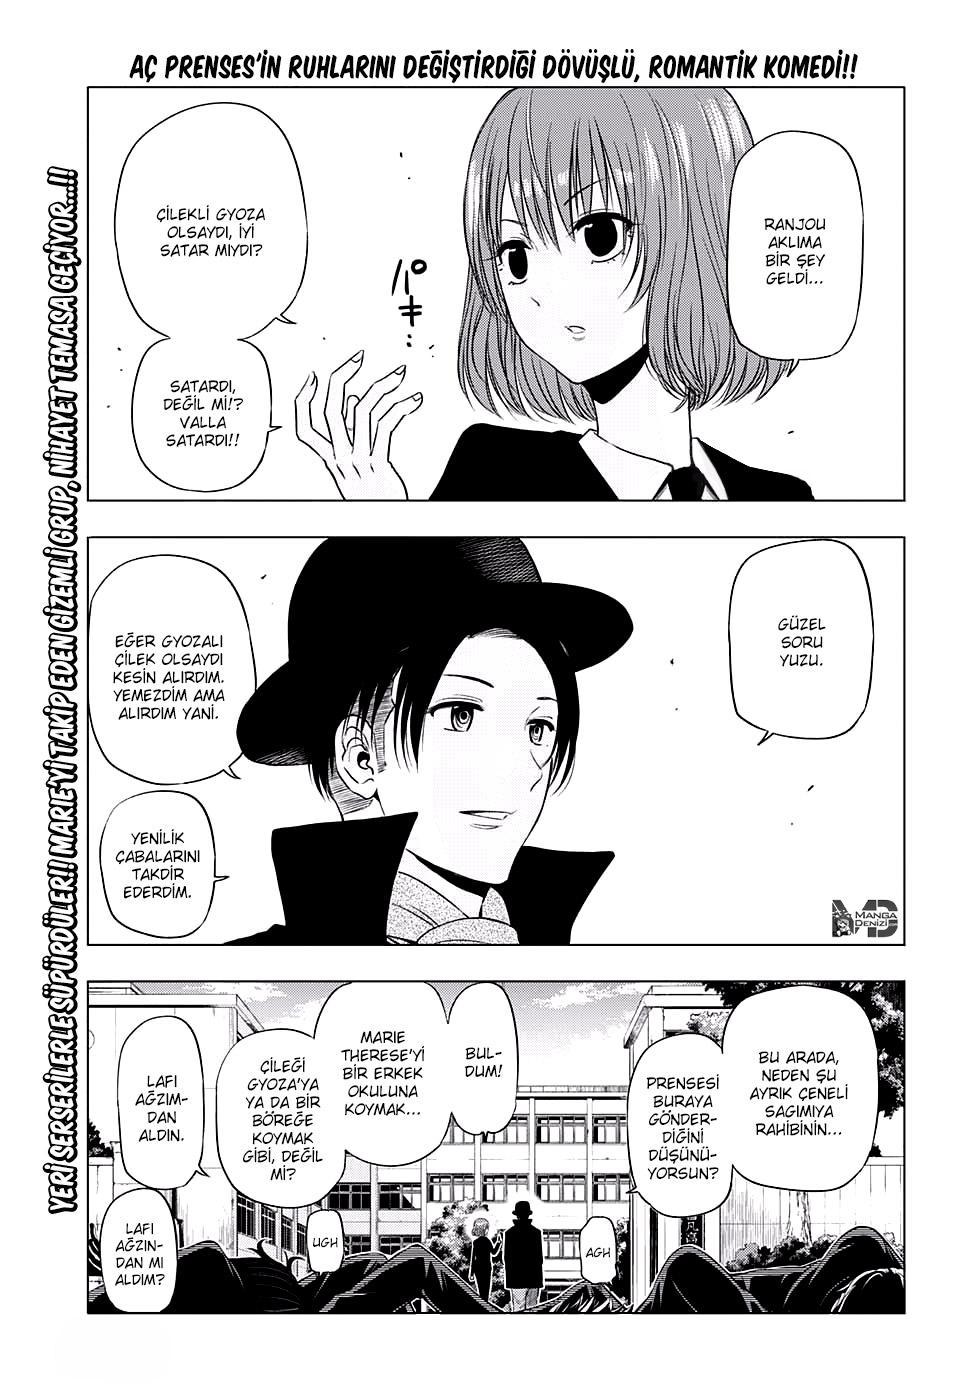 Hungry Marie mangasının 07 bölümünün 2. sayfasını okuyorsunuz.